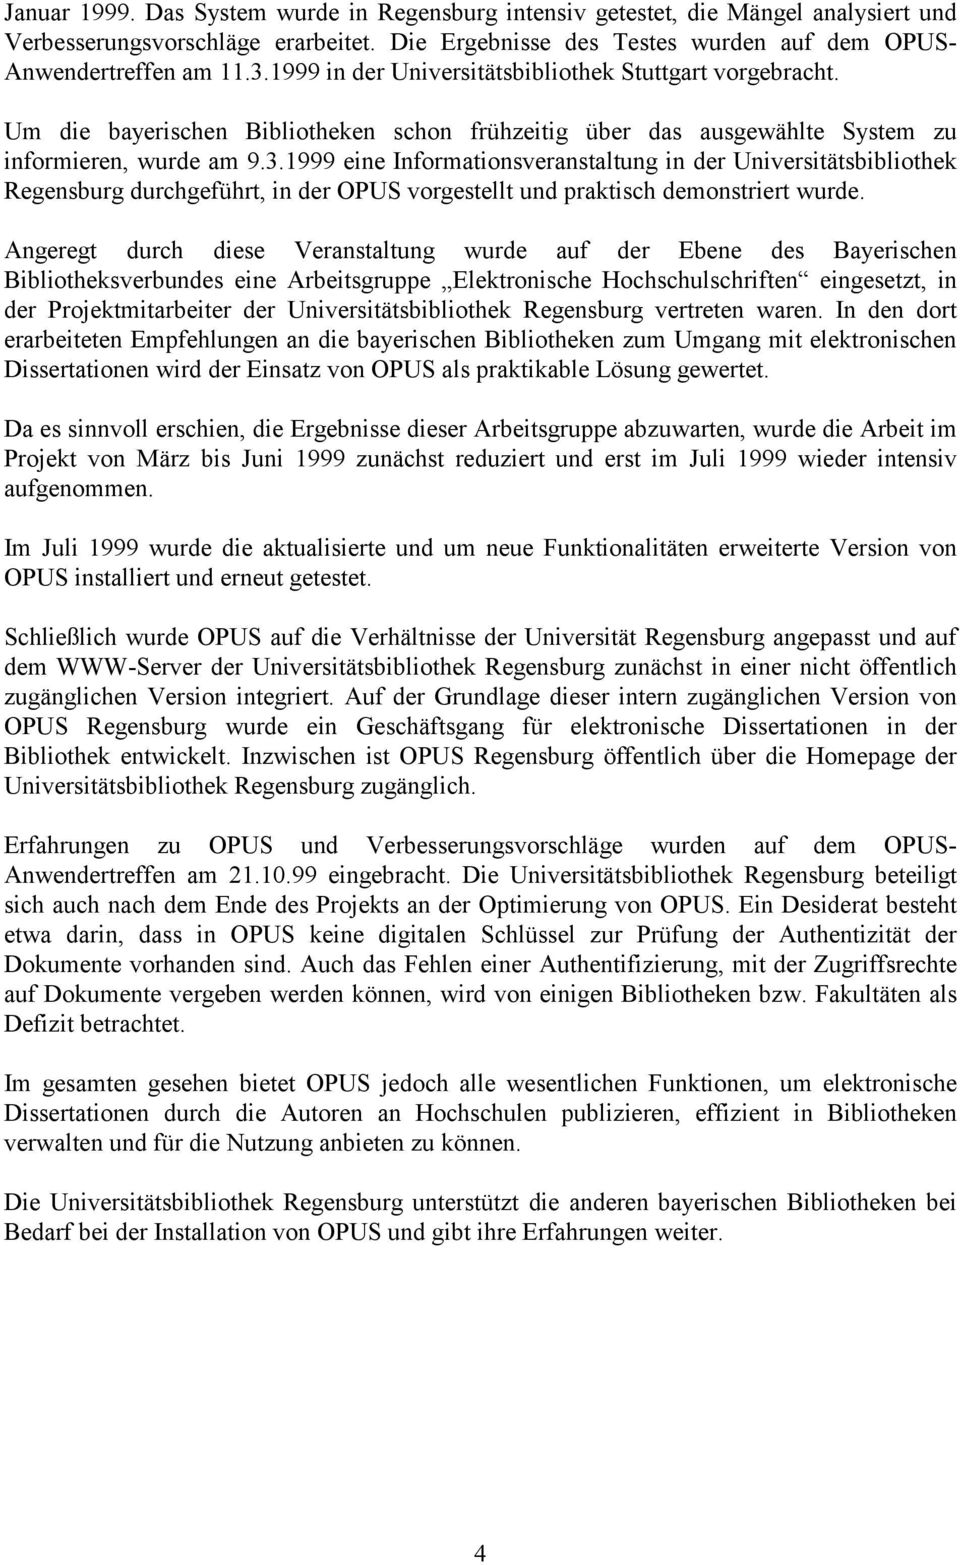 1999 eine Informationsveranstaltung in der Universitätsbibliothek Regensburg durchgeführt, in der OPUS vorgestellt und praktisch demonstriert wurde.